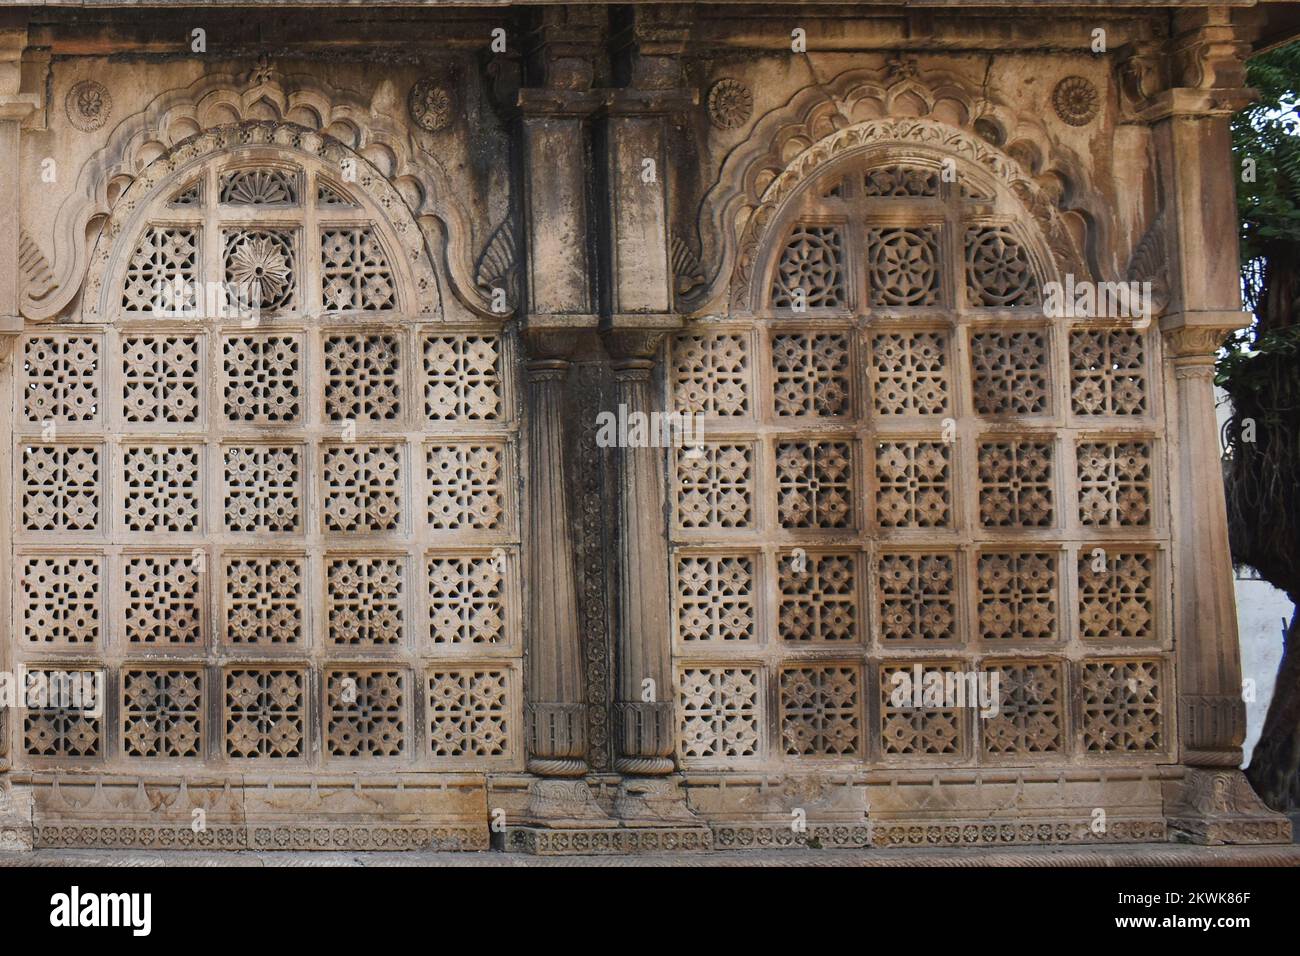 Vista de cerca de Maqbara cerca de la tumba del Sultán Ahmed, pared exterior de arquitectura con tallas intrincadas en piedra, Ahmedabad, Gujarat, India Foto de stock